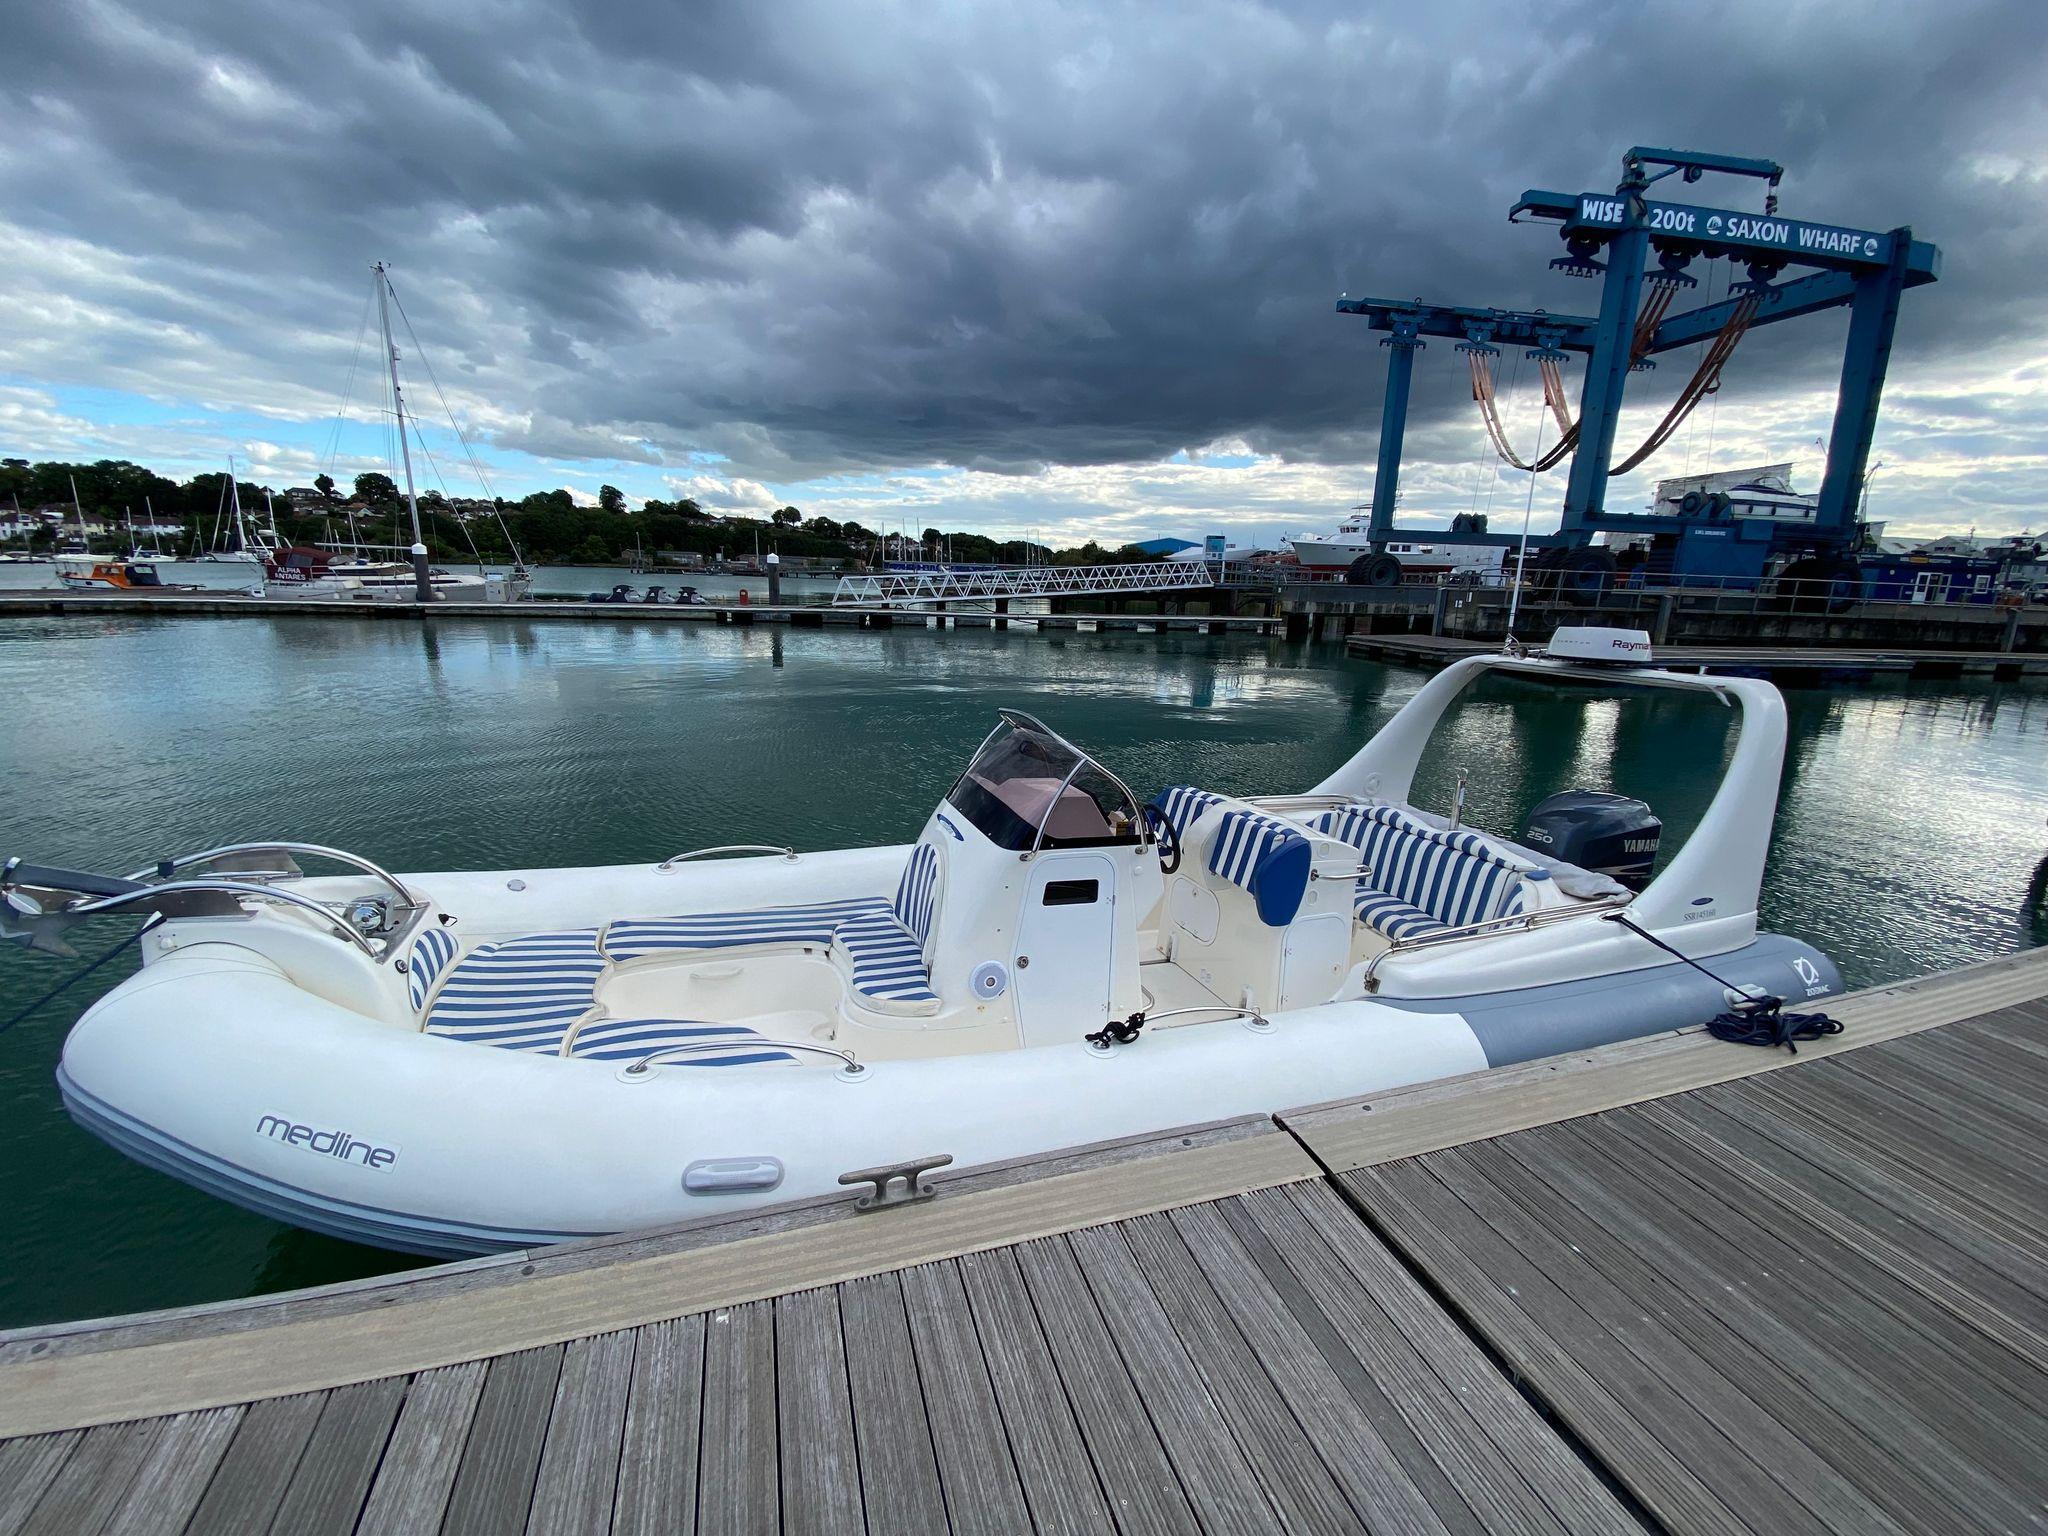 2009 Zodiac Pro 9 Man Embarcaciones neumáticas en venta - YachtWorld